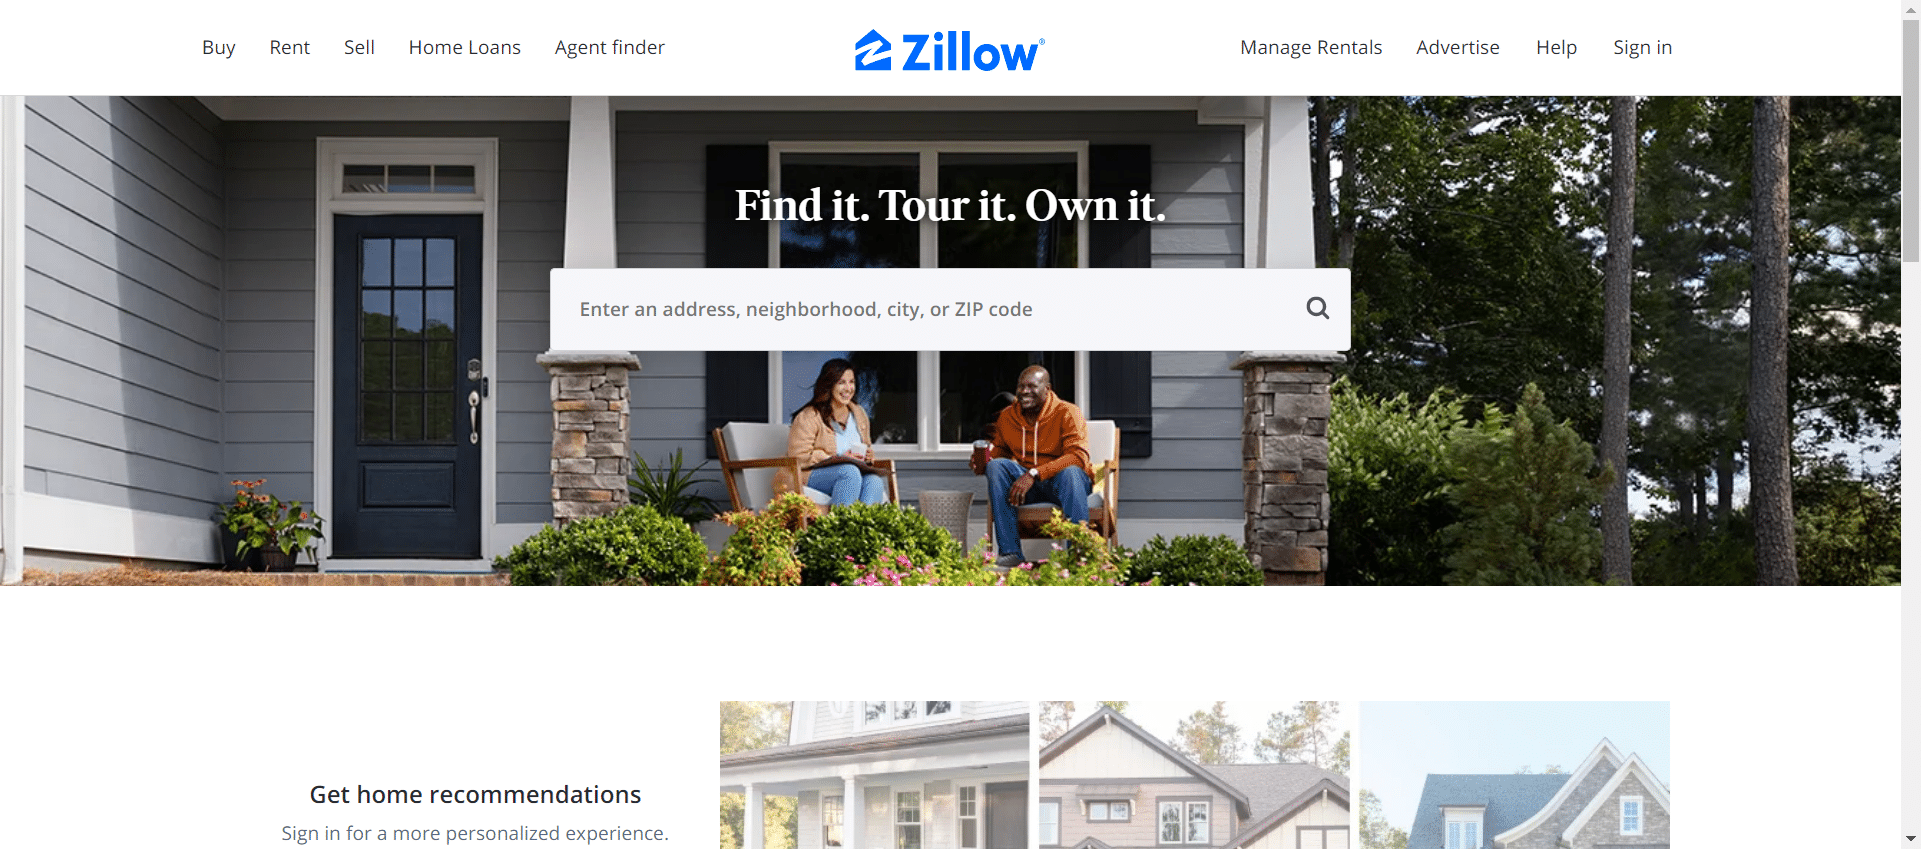 zillow website image</p>
<p>wordpress real estate website examples